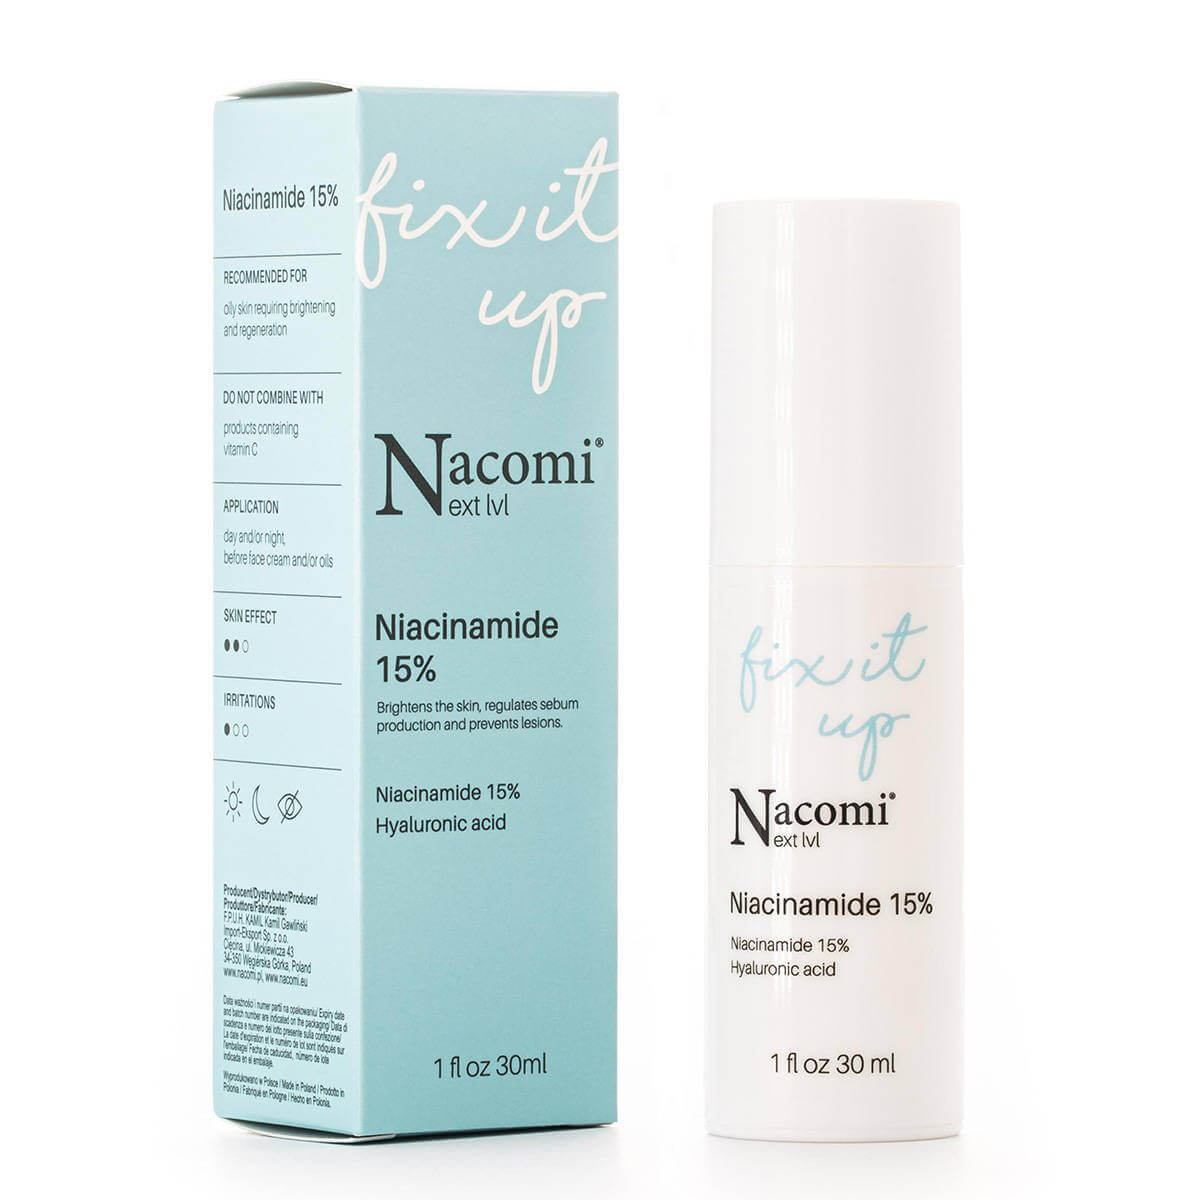 Nacomi Next Level serum do twarzy z niacynamidem 15%